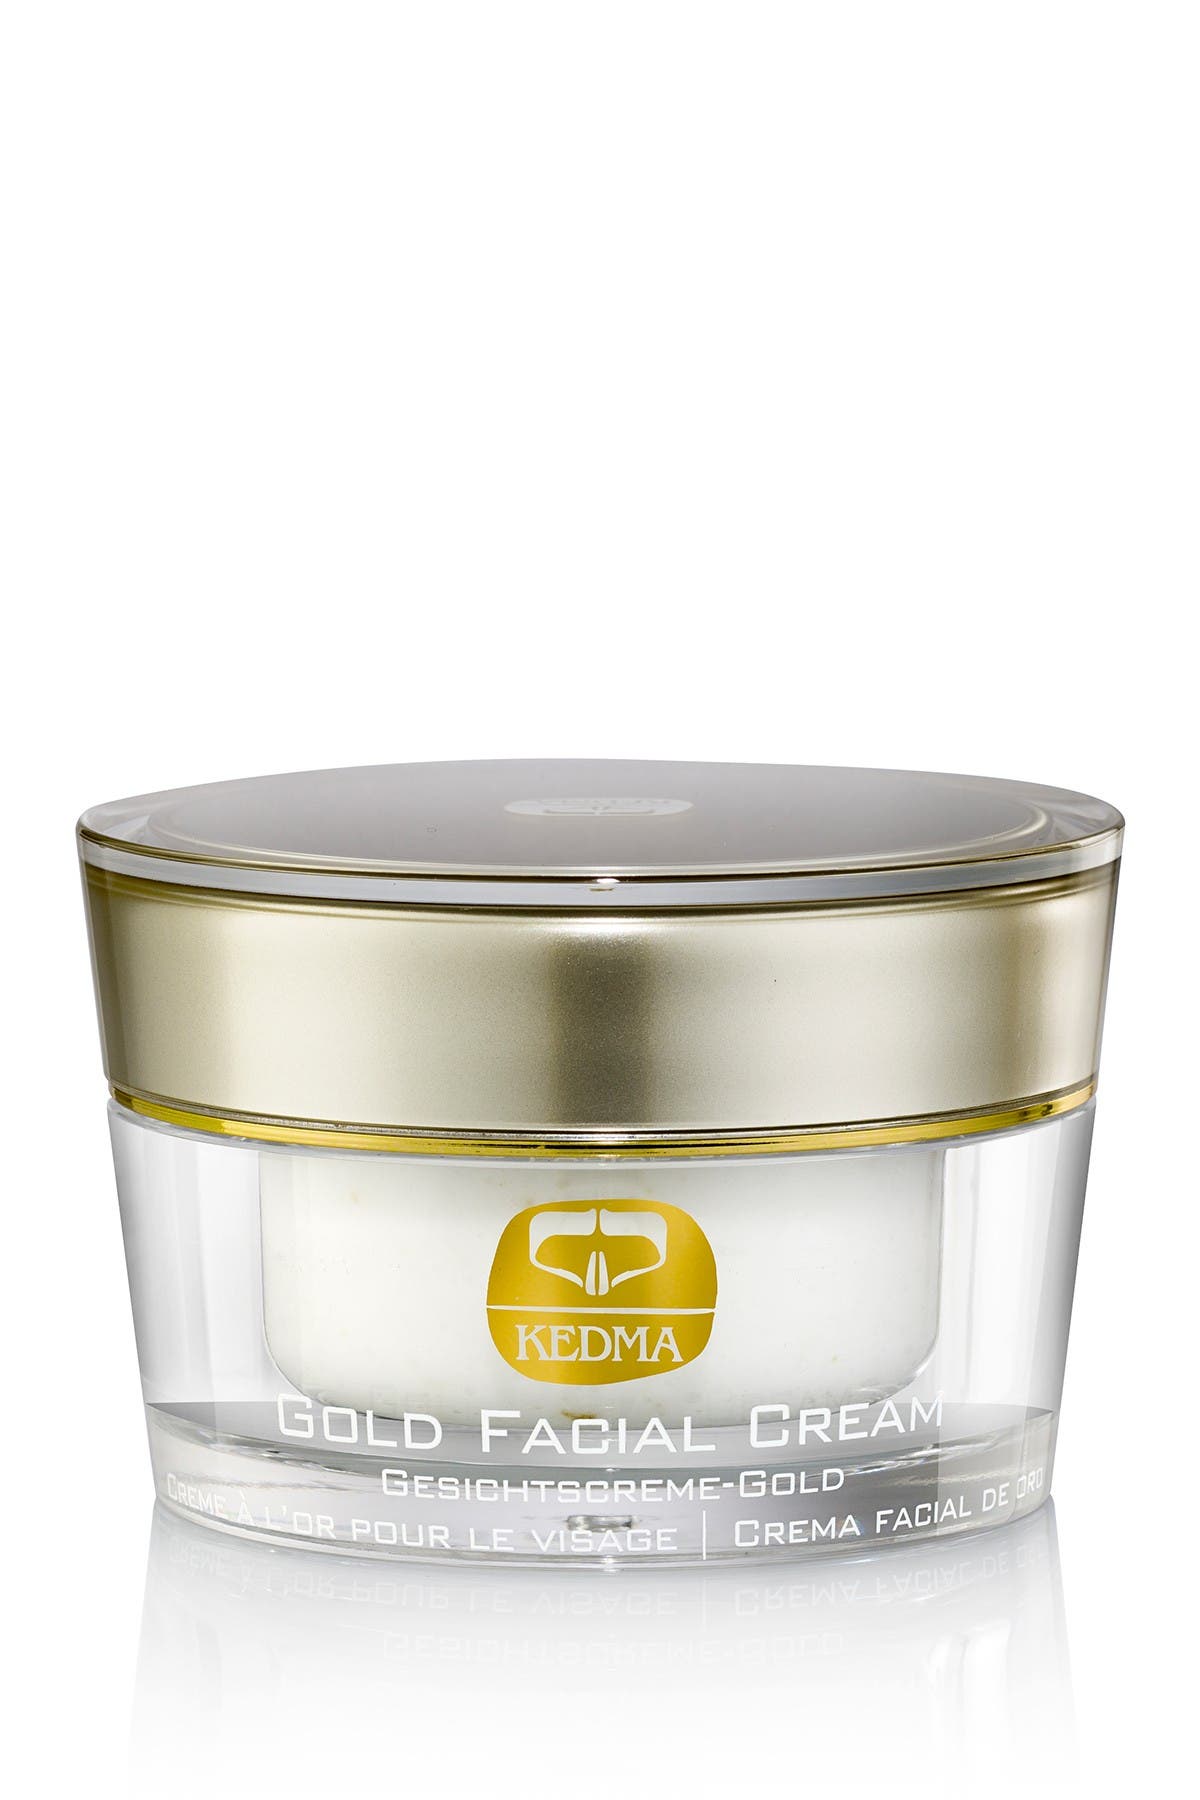 Kedma Gold Facial Cream